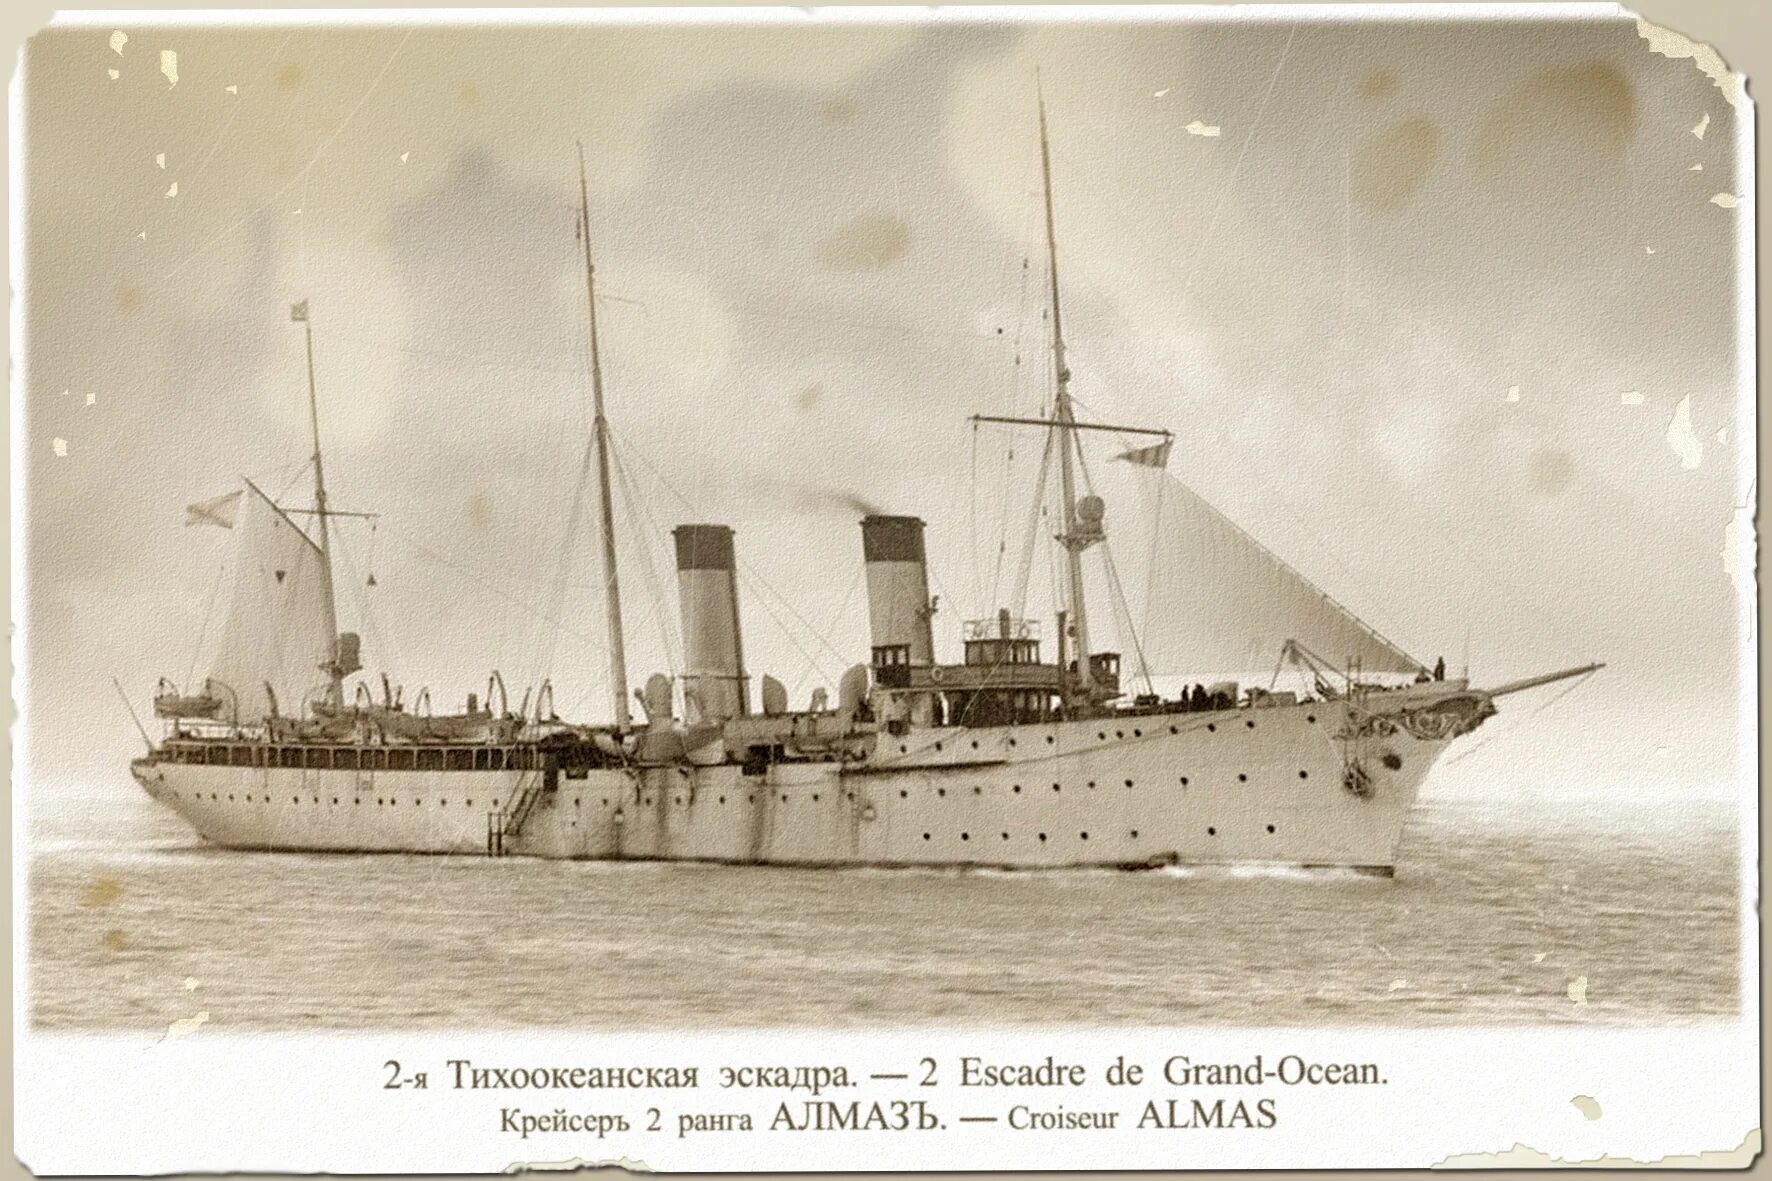 Тихоокеанская эскадра 1904. 2-Я Тихоокеанская эскадра 1904. Эскадра тихоокеанского флота